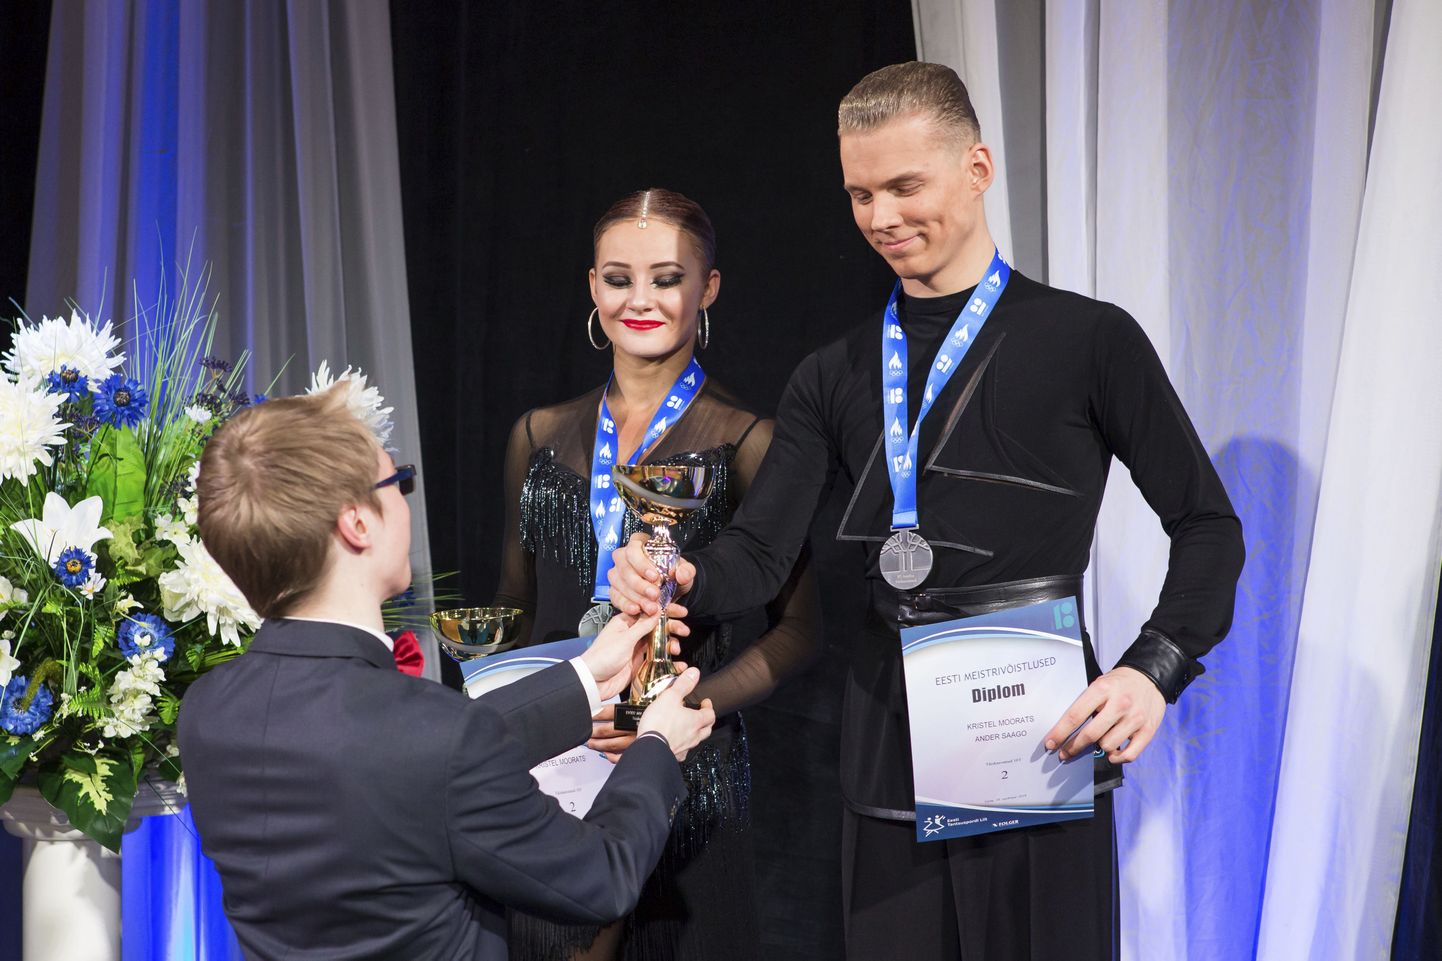 Tartu tantsukoolide Tango ja Respect ühispaar Kristel Moorats ja Ander Saago saavutasid Eesti täiskasvanute kümne tantsu meistrivõistlustel hõbemedali. Noorte tiitlivõistlustel pälvisid nad omas vanuserühmas Ladina-Ameerika tantsudes kulla.